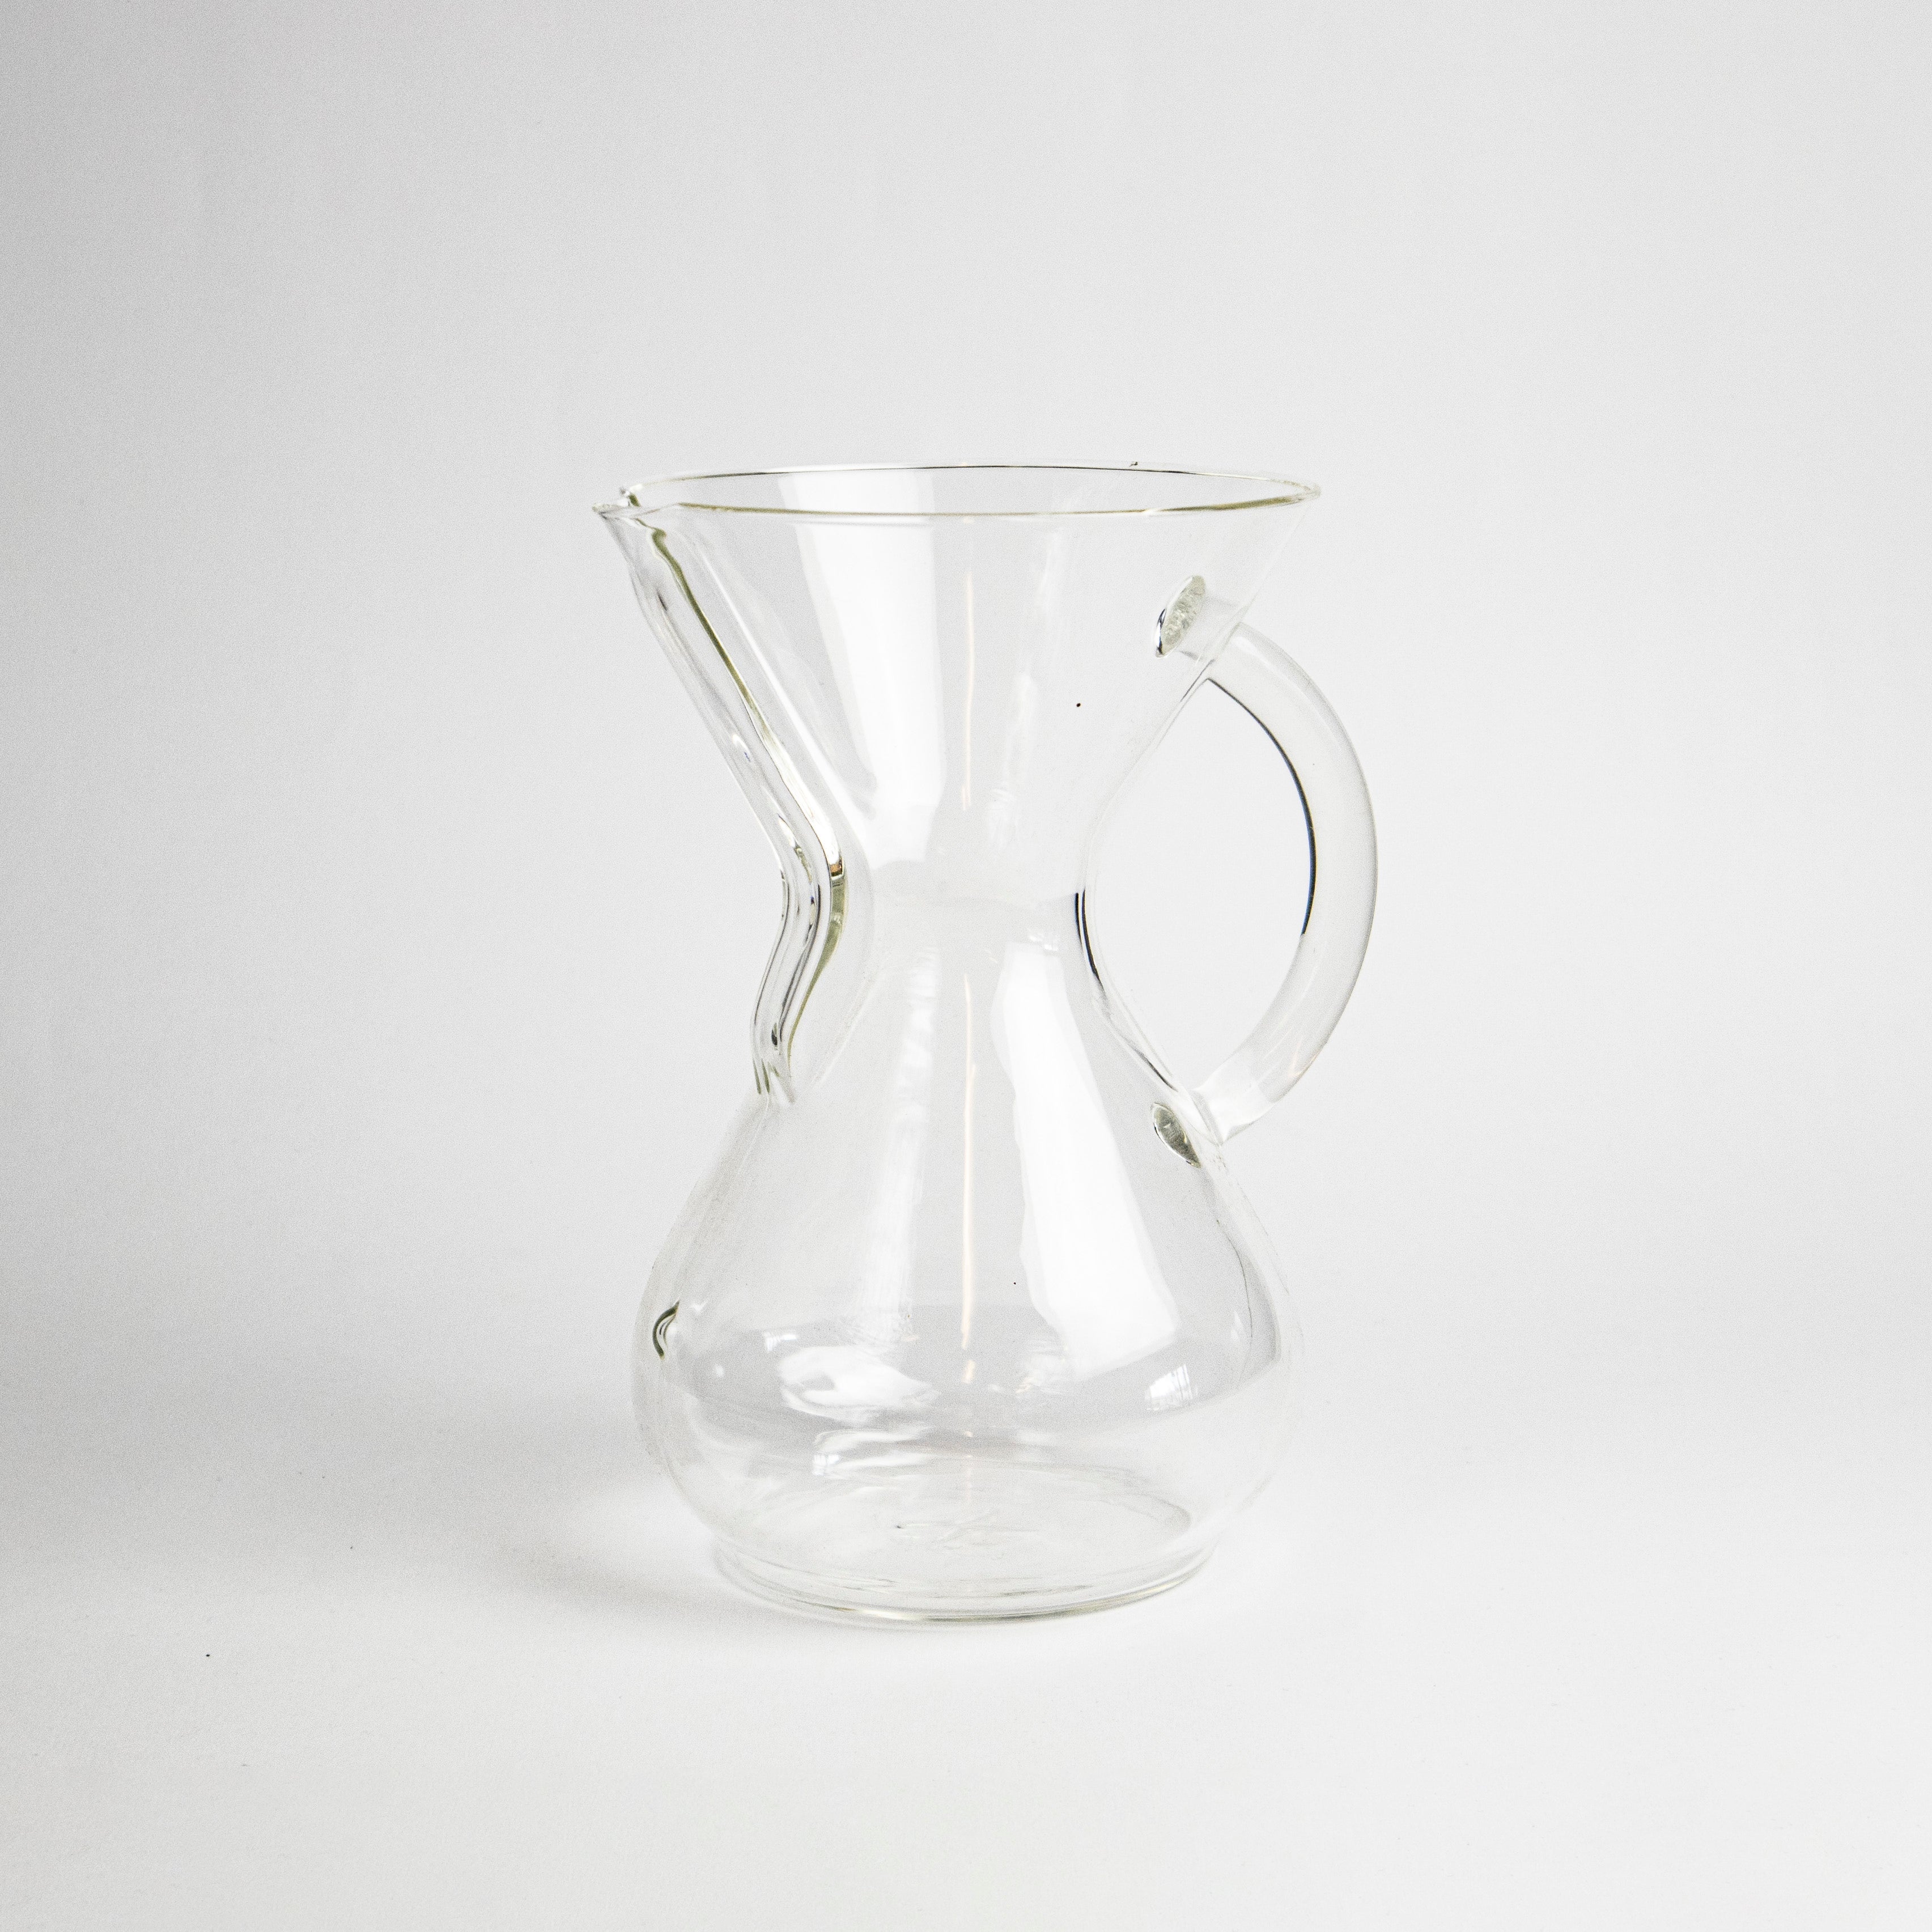 CHEMEX kavinukas Kavos ruošimo indai verocafe 1-8 puodeliams su stikline rankena 